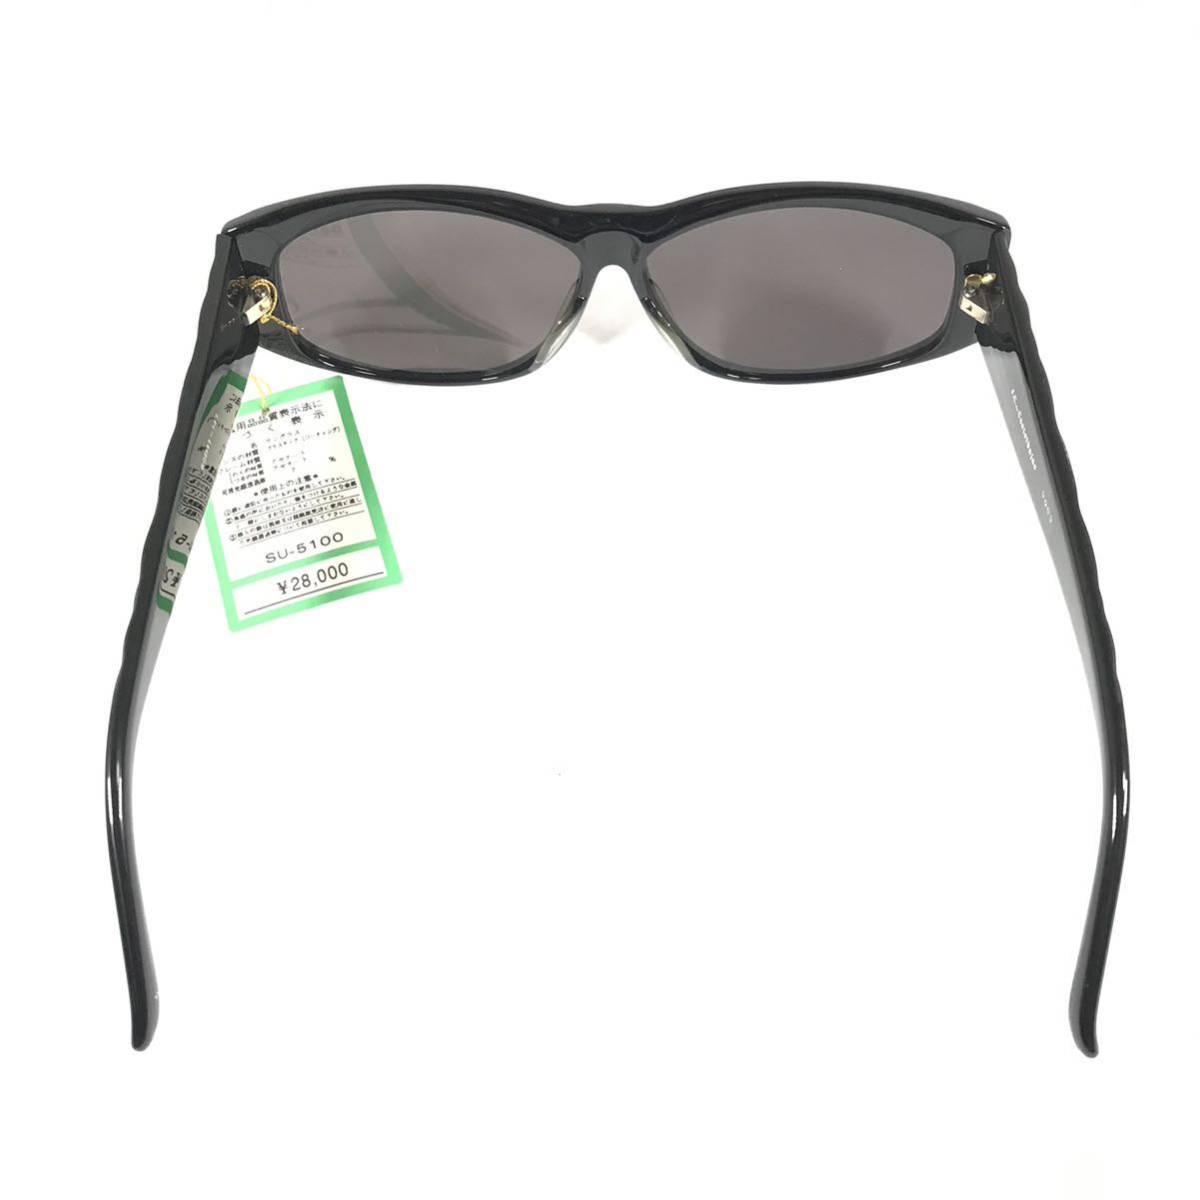  не использовался товар [ Castelbajac ] подлинный товар Castelbajac солнцезащитные очки JC Logo 9003 серый цвет серия × чёрный мужской женский обычная цена 2.8 десять тысяч иен стоимость доставки 520 иен 1